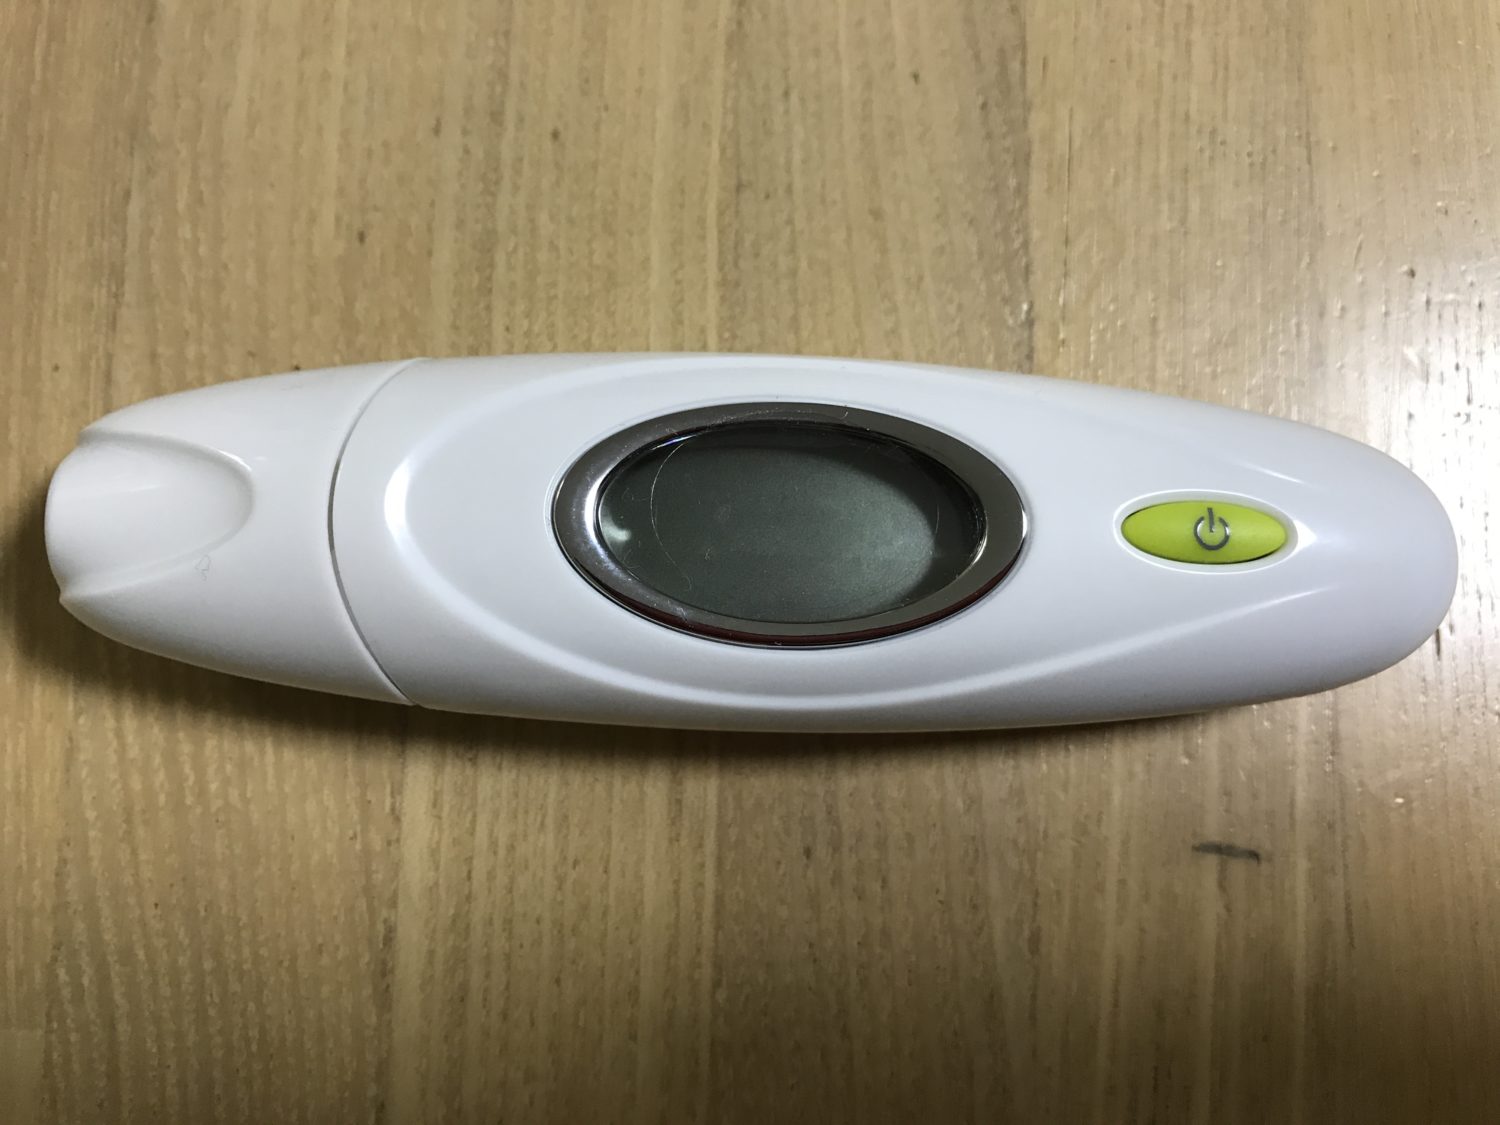 次女も生まれたことなので、最短約2秒で測れる、赤外線体温計を買ってみました